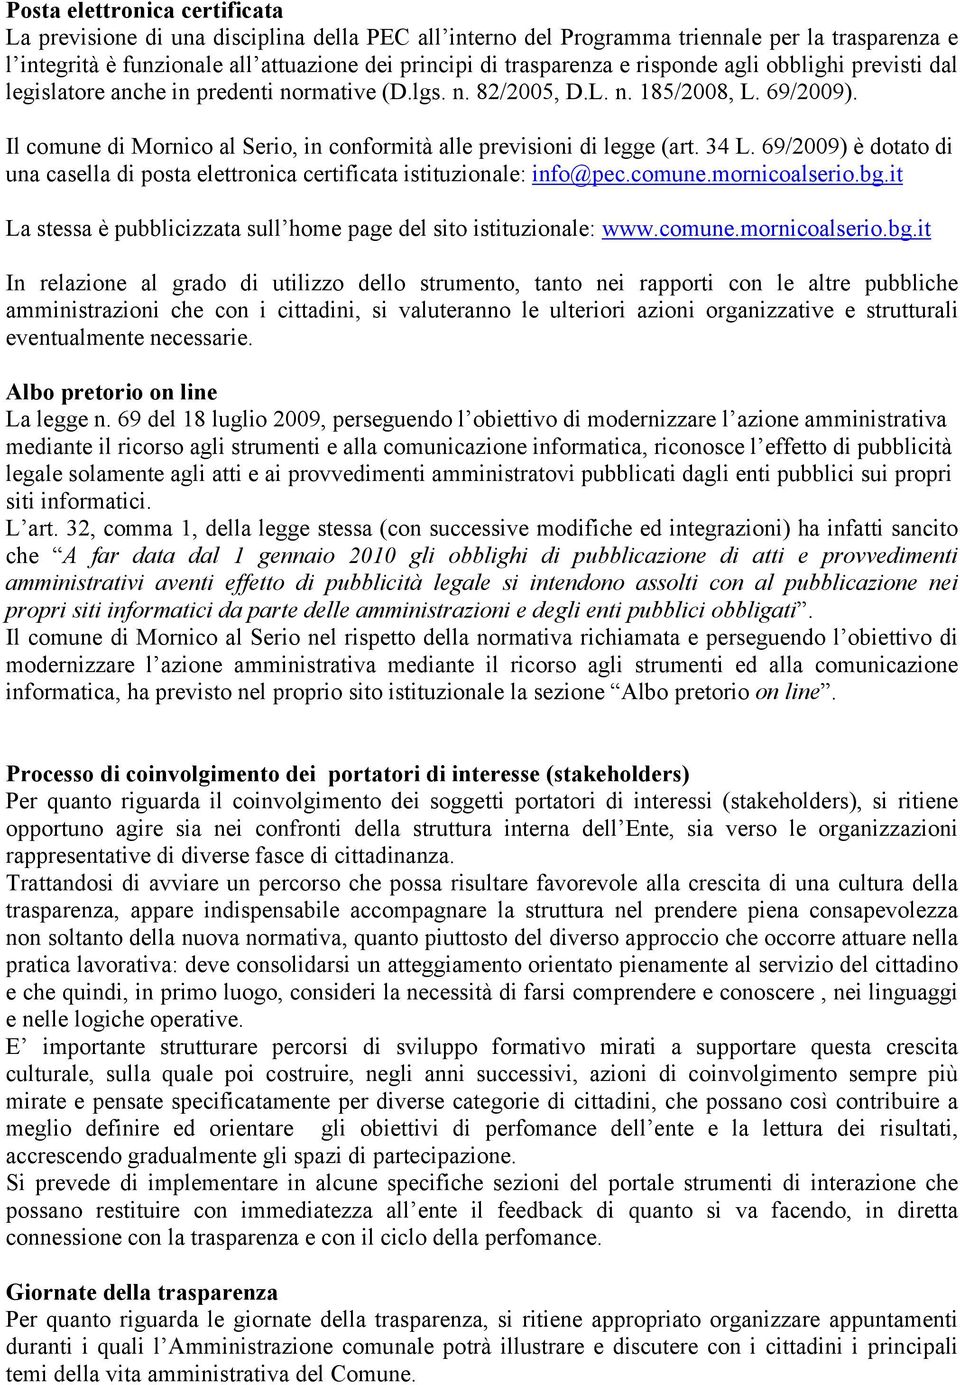 Il comune di Mornico al Serio, in conformità alle previsioni di legge (art. 34 L. 69/2009) è dotato di una casella di posta elettronica certificata istituzionale: info@pec.comune.mornicoalserio.bg.